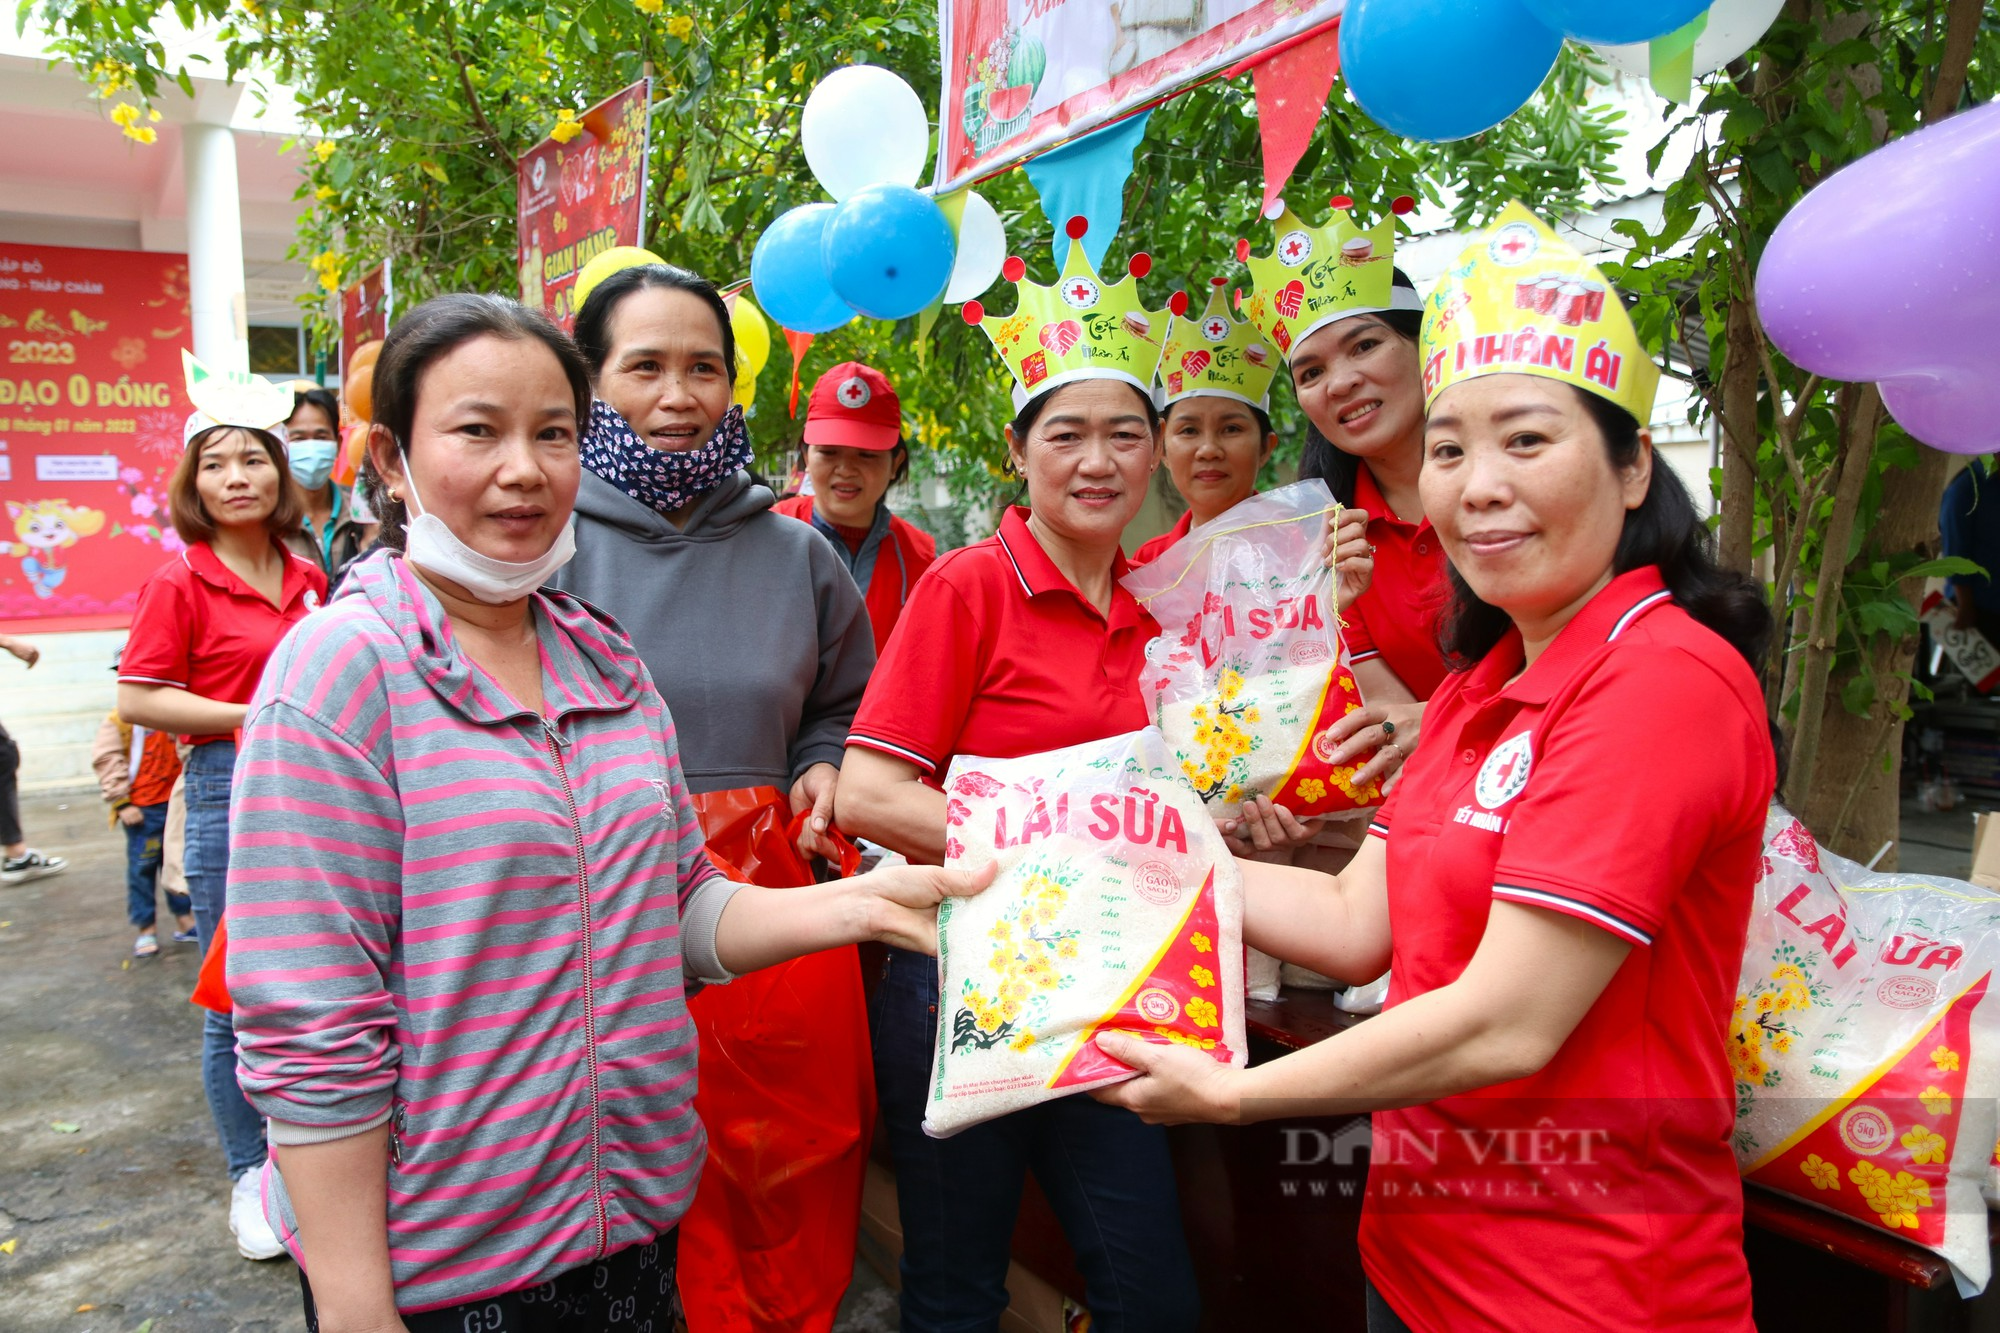 Ấm áp “Phiên chợ nhân đạo 0 đồng” cho người nghèo tại Ninh Thuận - Ảnh 13.